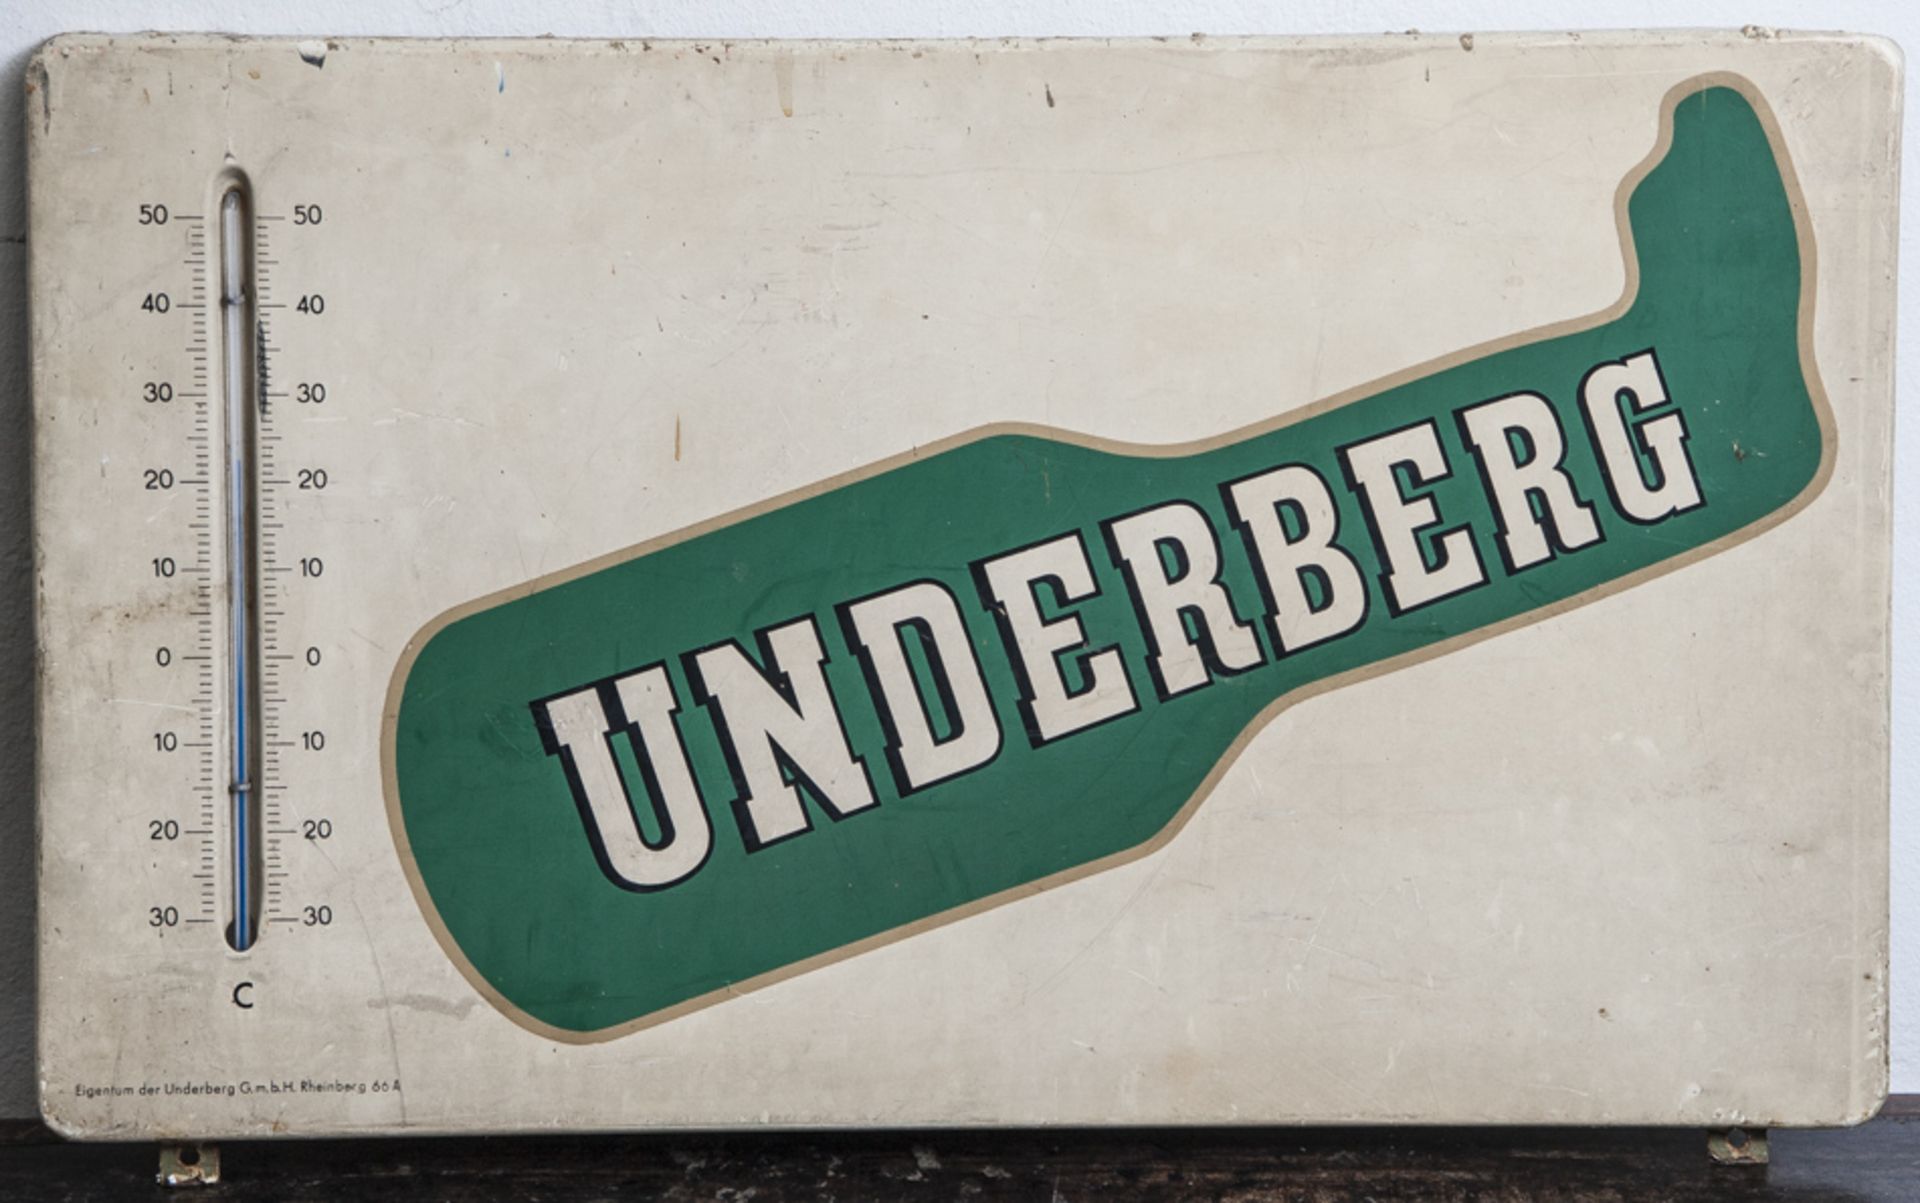 Emailschild "Underberg", bez. Eigentum der Underberg GmbH Rheinberg. Ca. 38 x 65 cm,Thermometer in